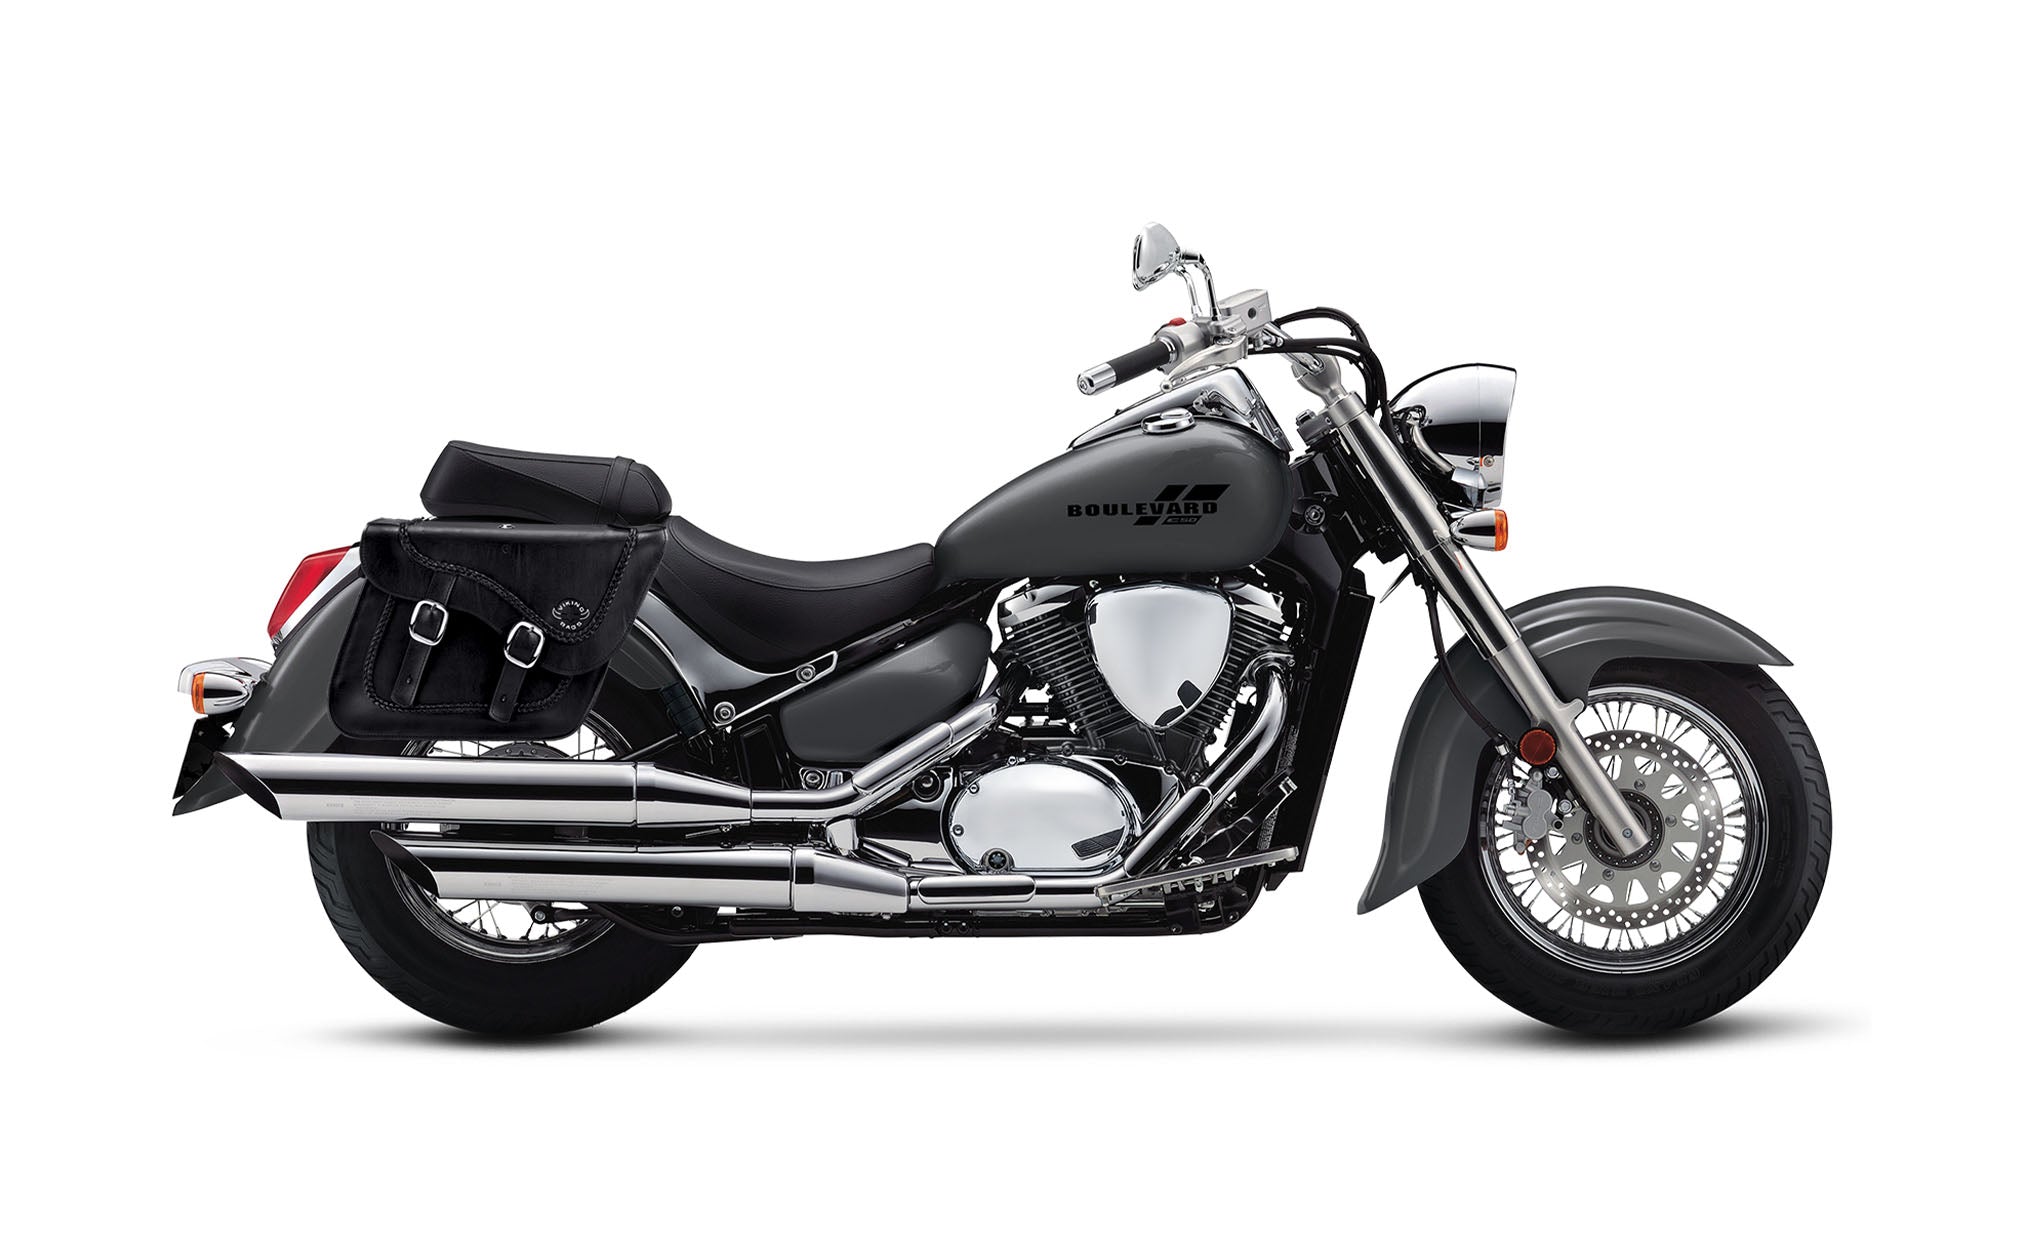 Viking Americano Suzuki Boulevard C50 Vl800 Braided Large Leather Motorcycle Saddlebags on Bike Photo @expand